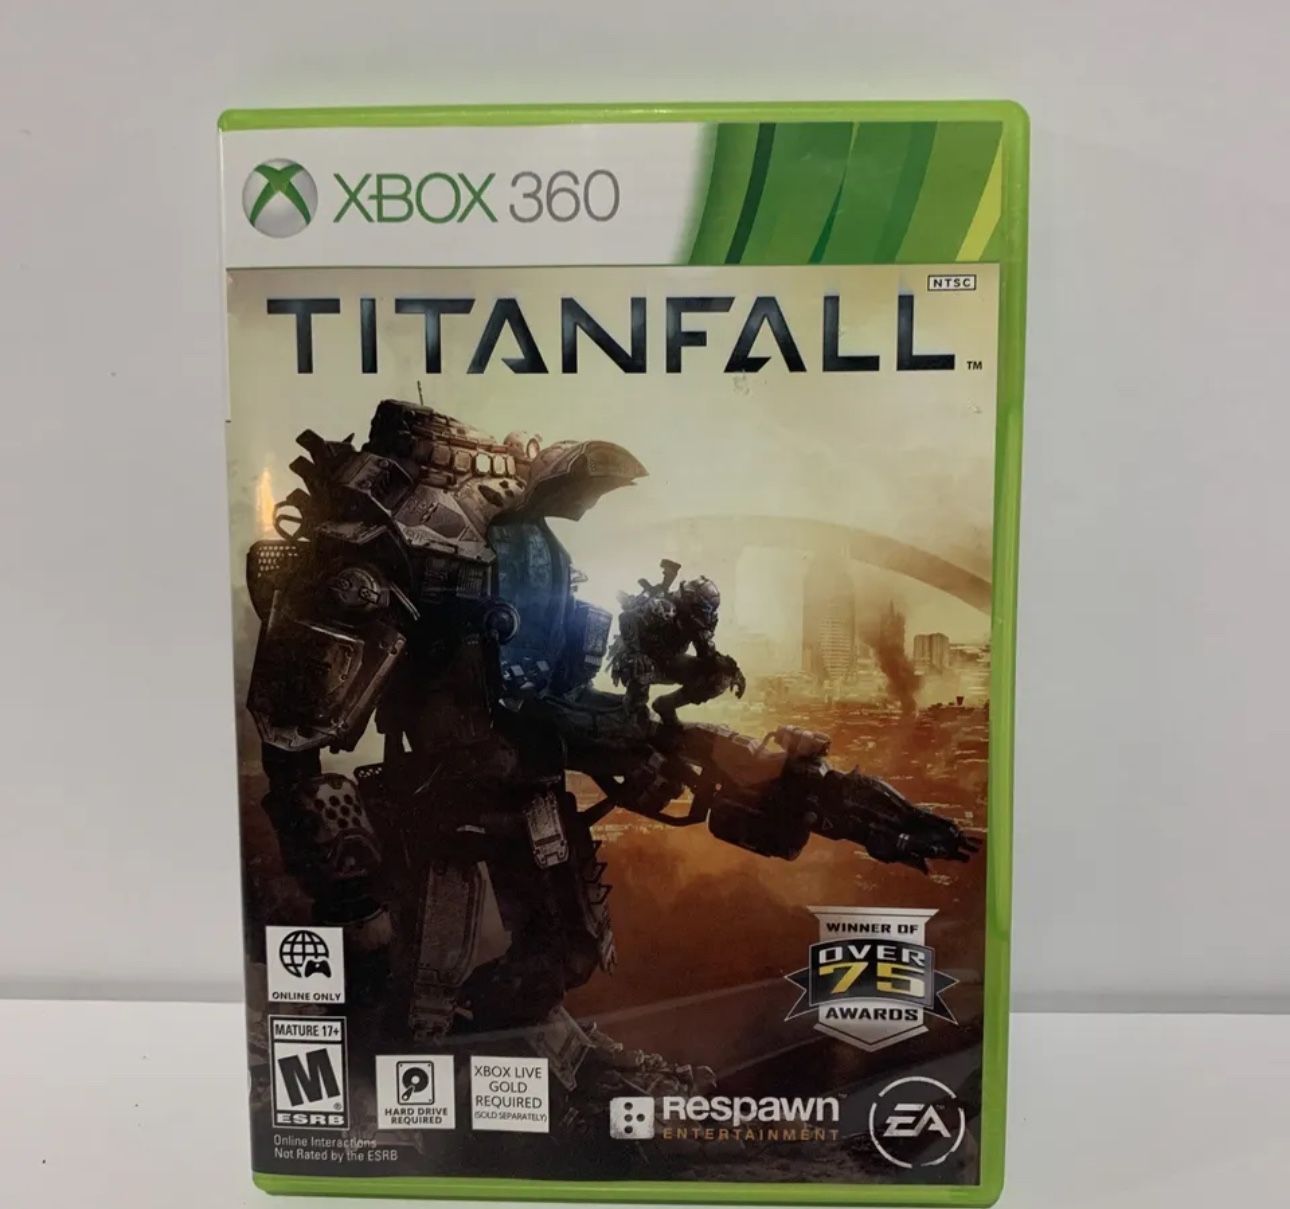 Titanfall - Xbox 360 game